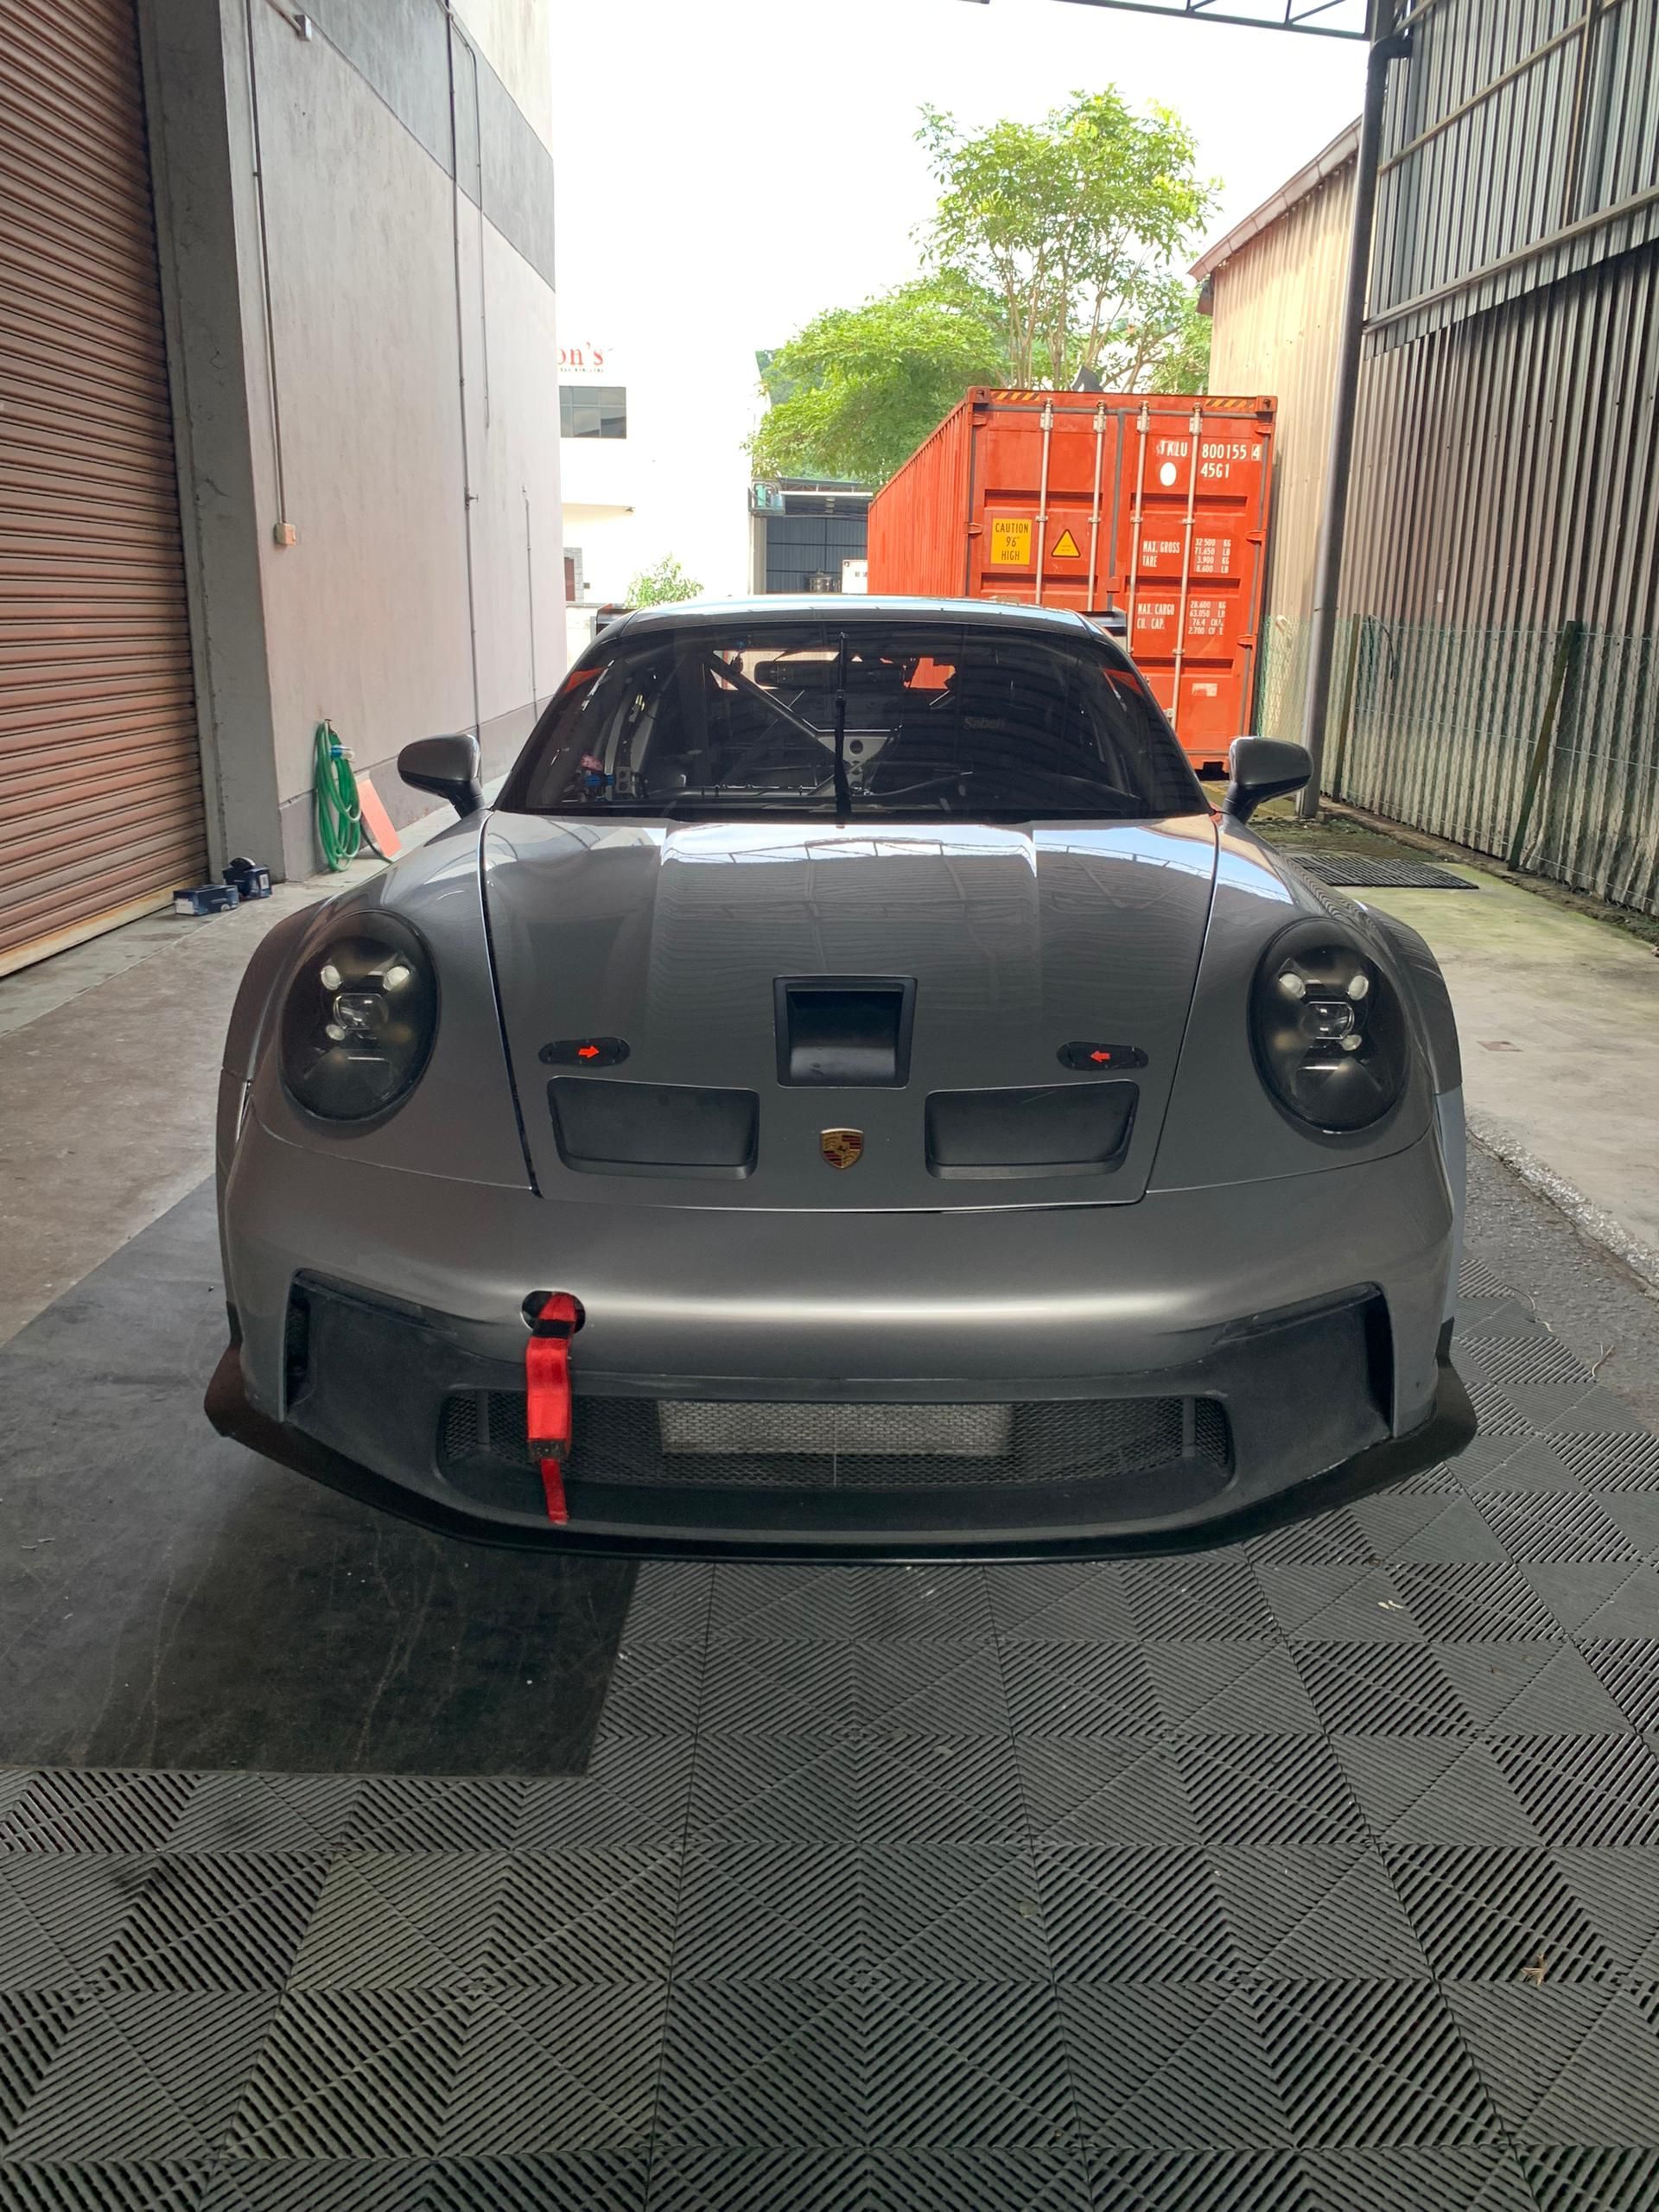 2021 保時捷 911 GT3 Cup (992)-56.9hrs+3.7hrsGearBox